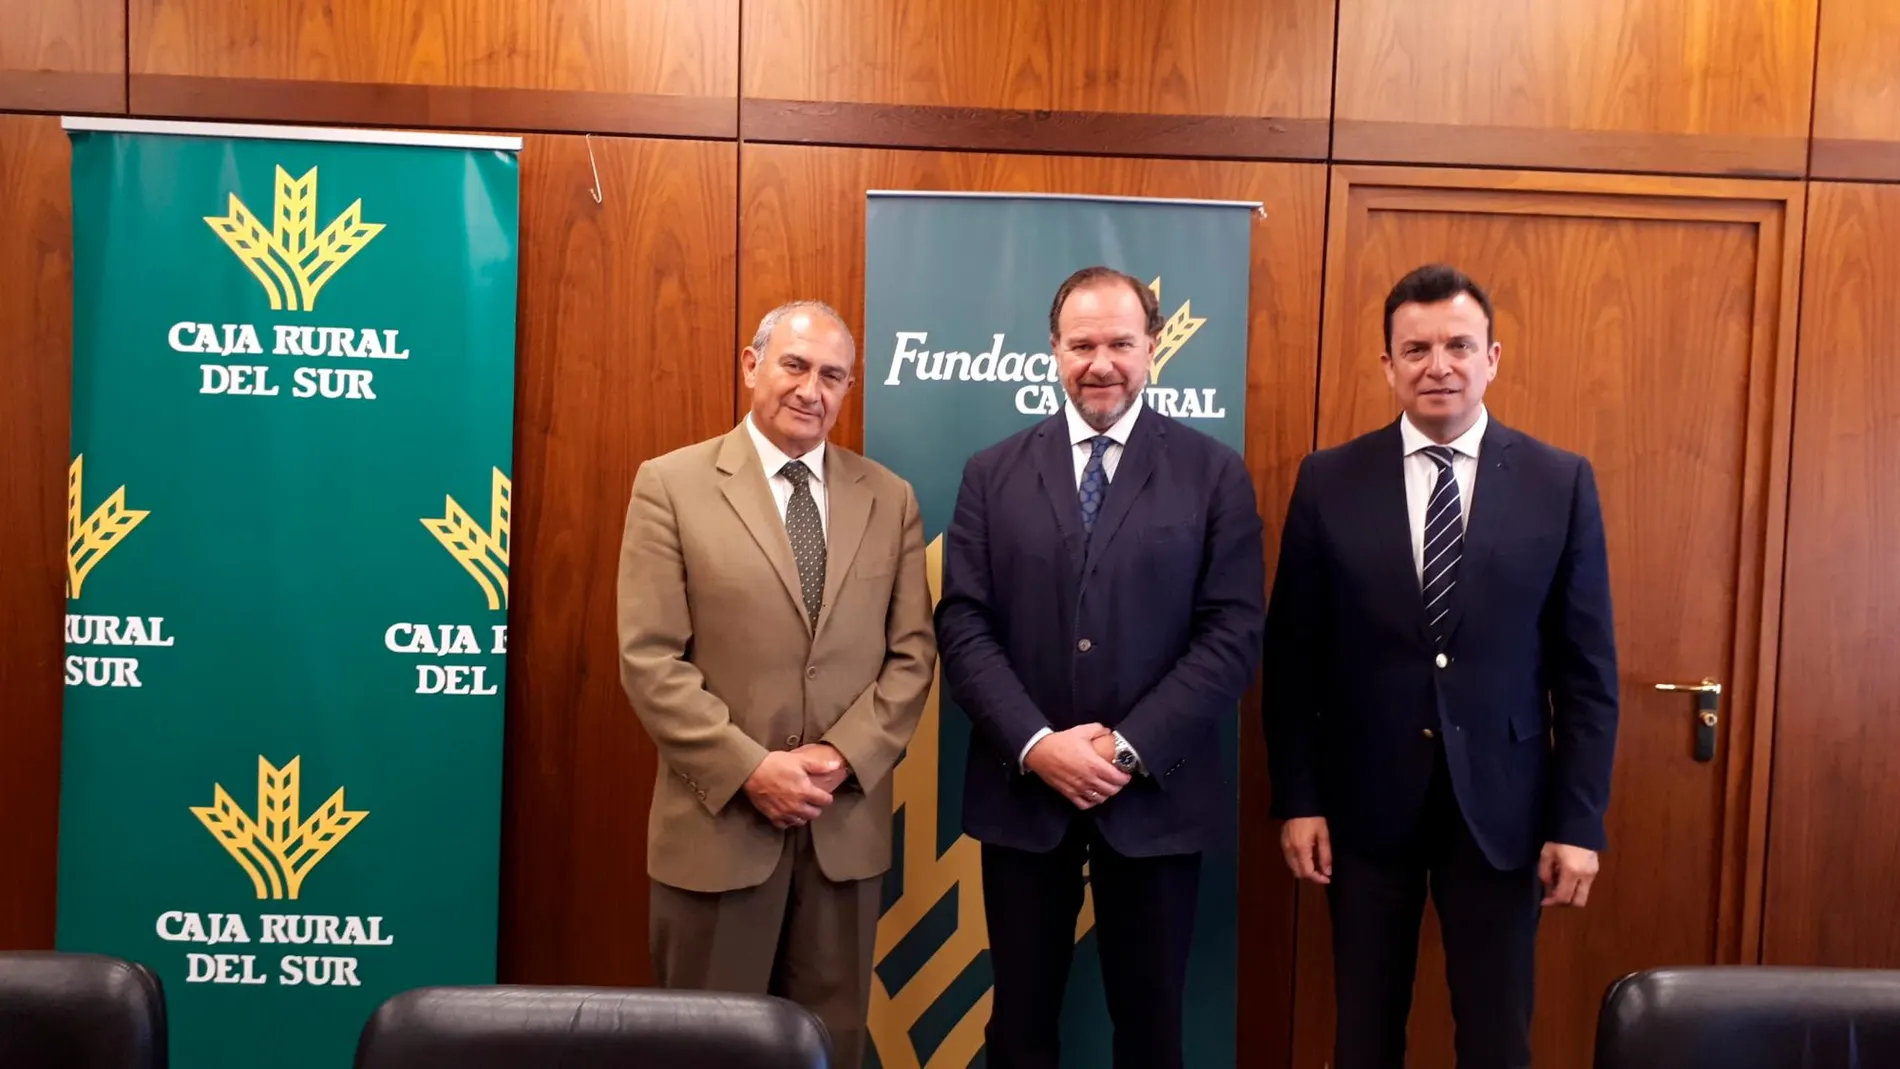 Jesús Jiménez Soria, José Luis García-Palacios Álvarez y Emilio Ponce tras la firma del convenio / Foto: L a Razón